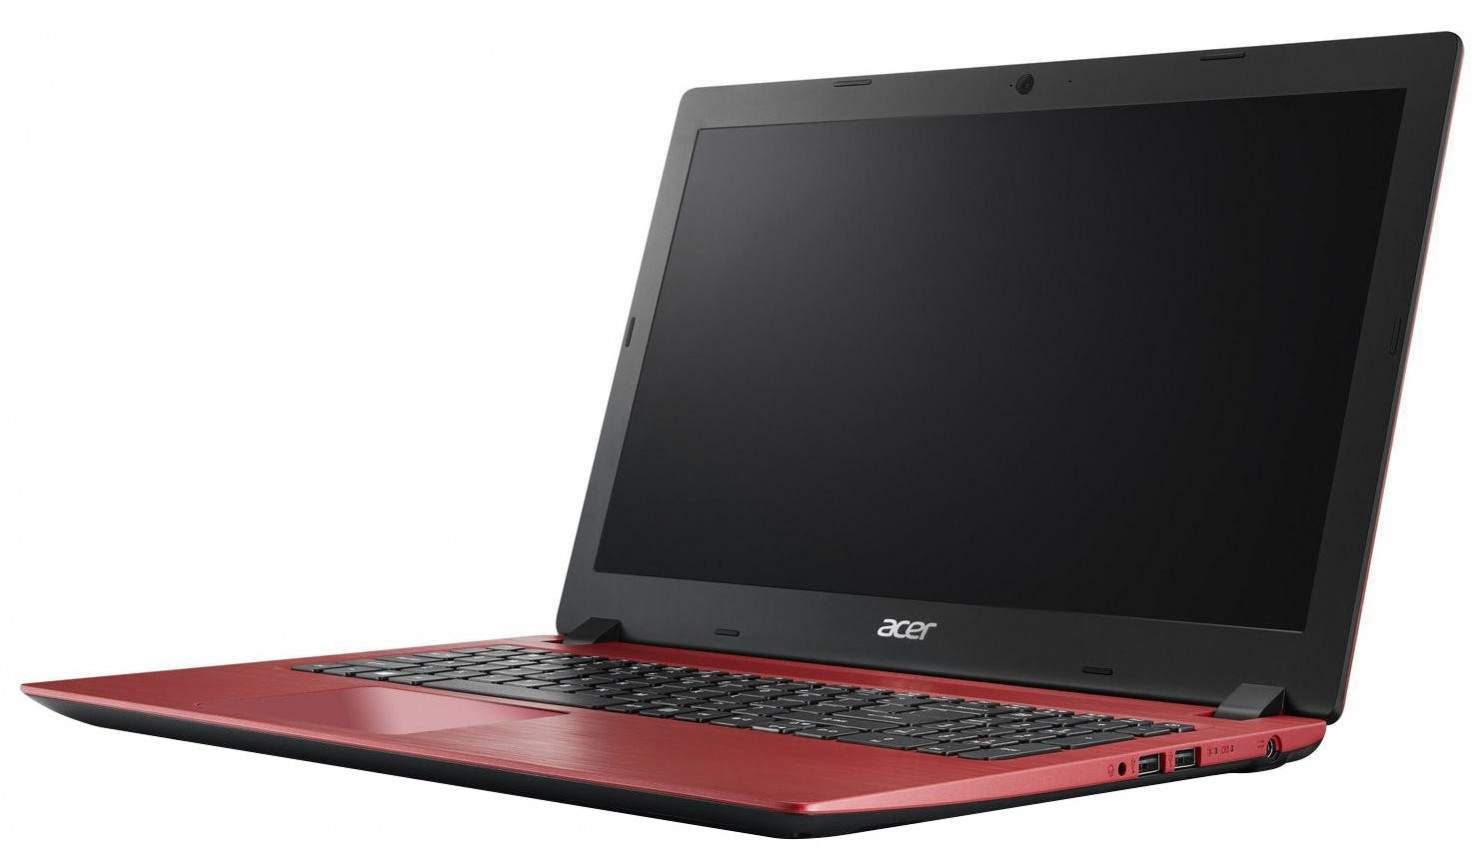 Harga Laptop Acer Aspire 3 A314 32 : Harga Acer Aspire 3 A314 32 C3x0 C09w C52q Spesifikasi Februari 2021 Pricebook : Ini merupakan laptop gaming yang masuk dalam katagori laptop tujuh hdmi® port with hdcp support, 802.11a/b/g/n/ac wireless lan, sd™ card reader.